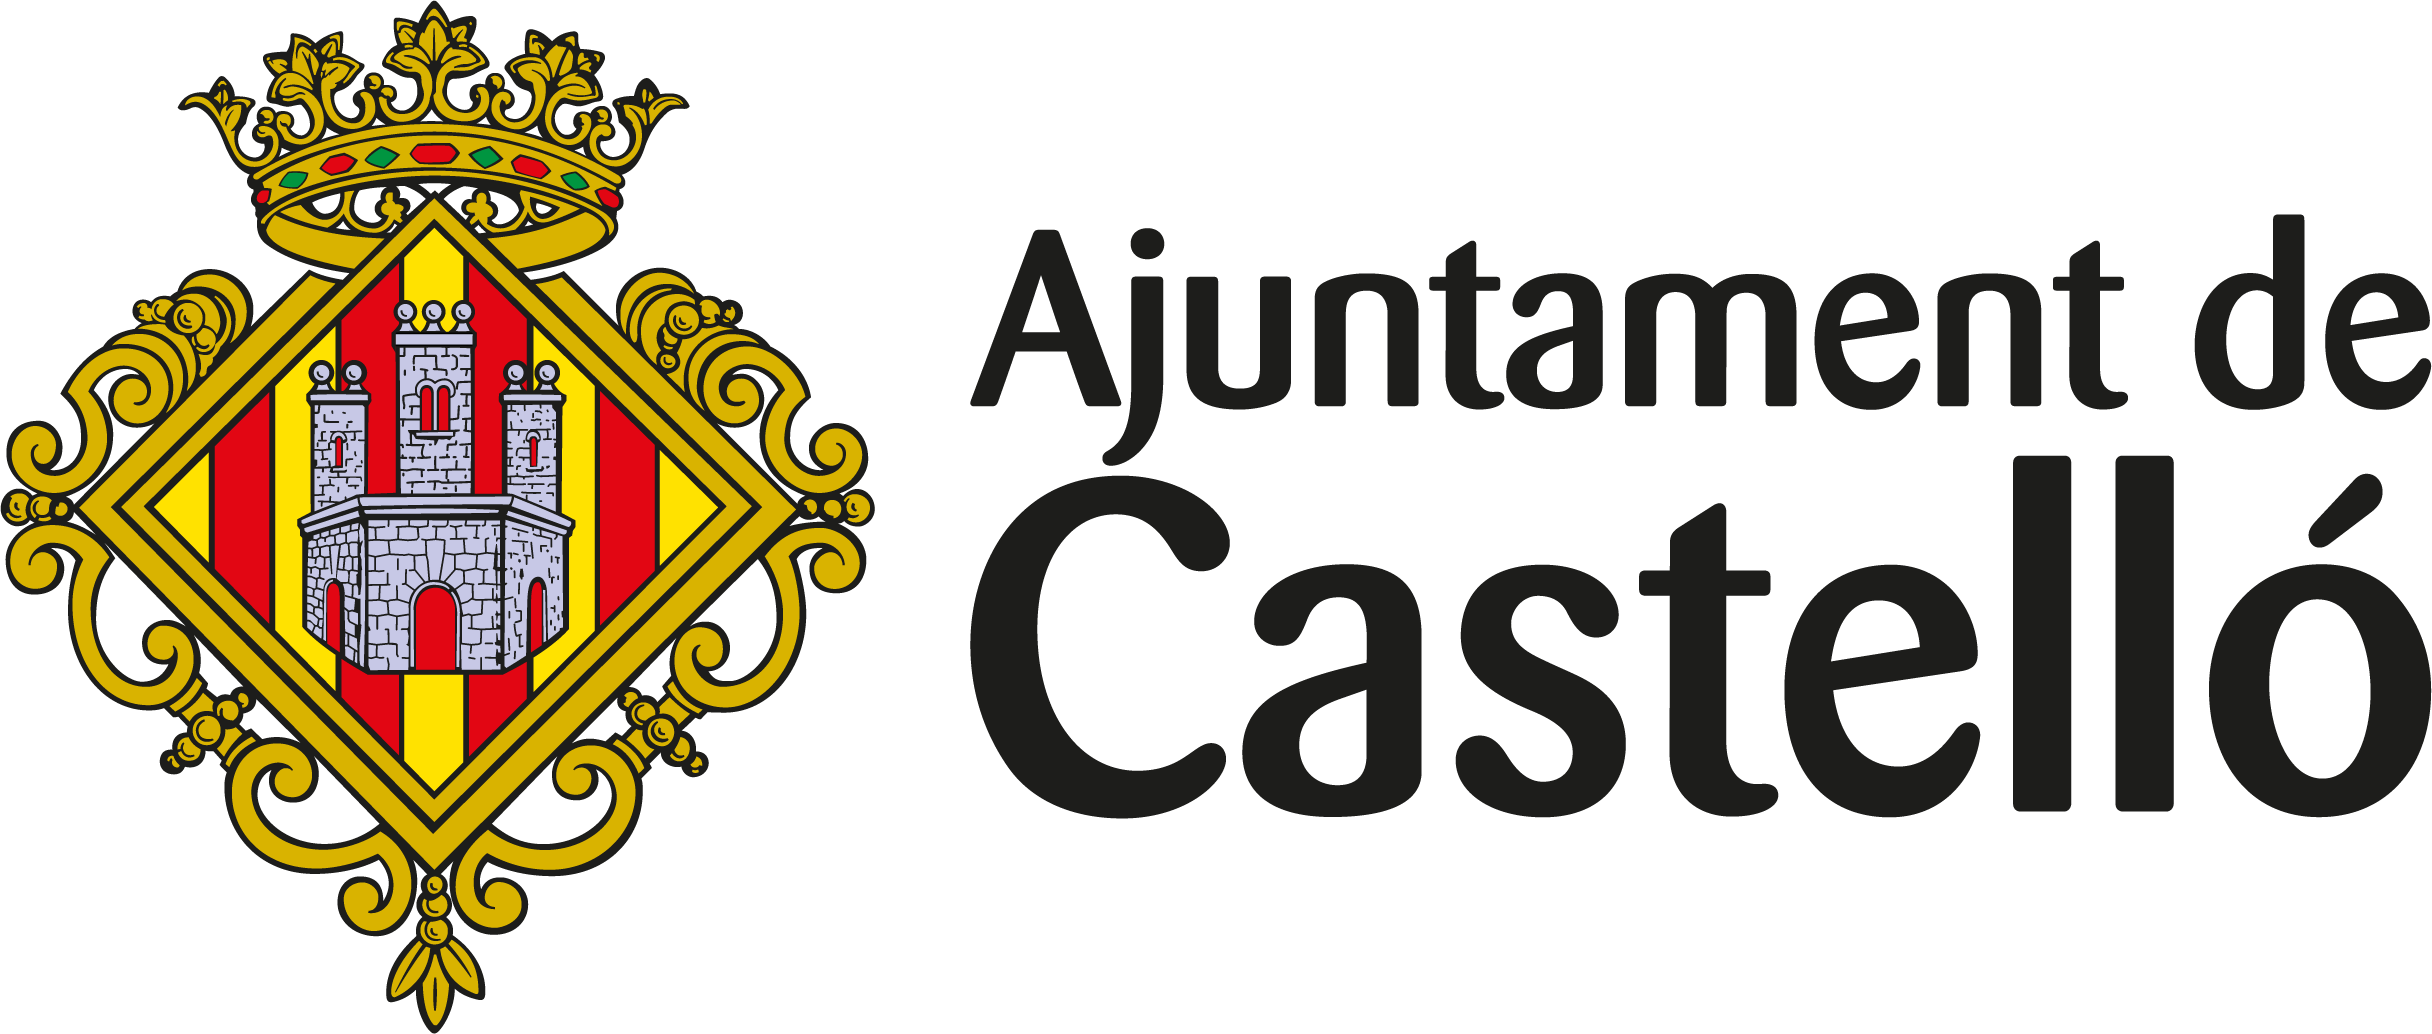 Ajuntament de Castelló